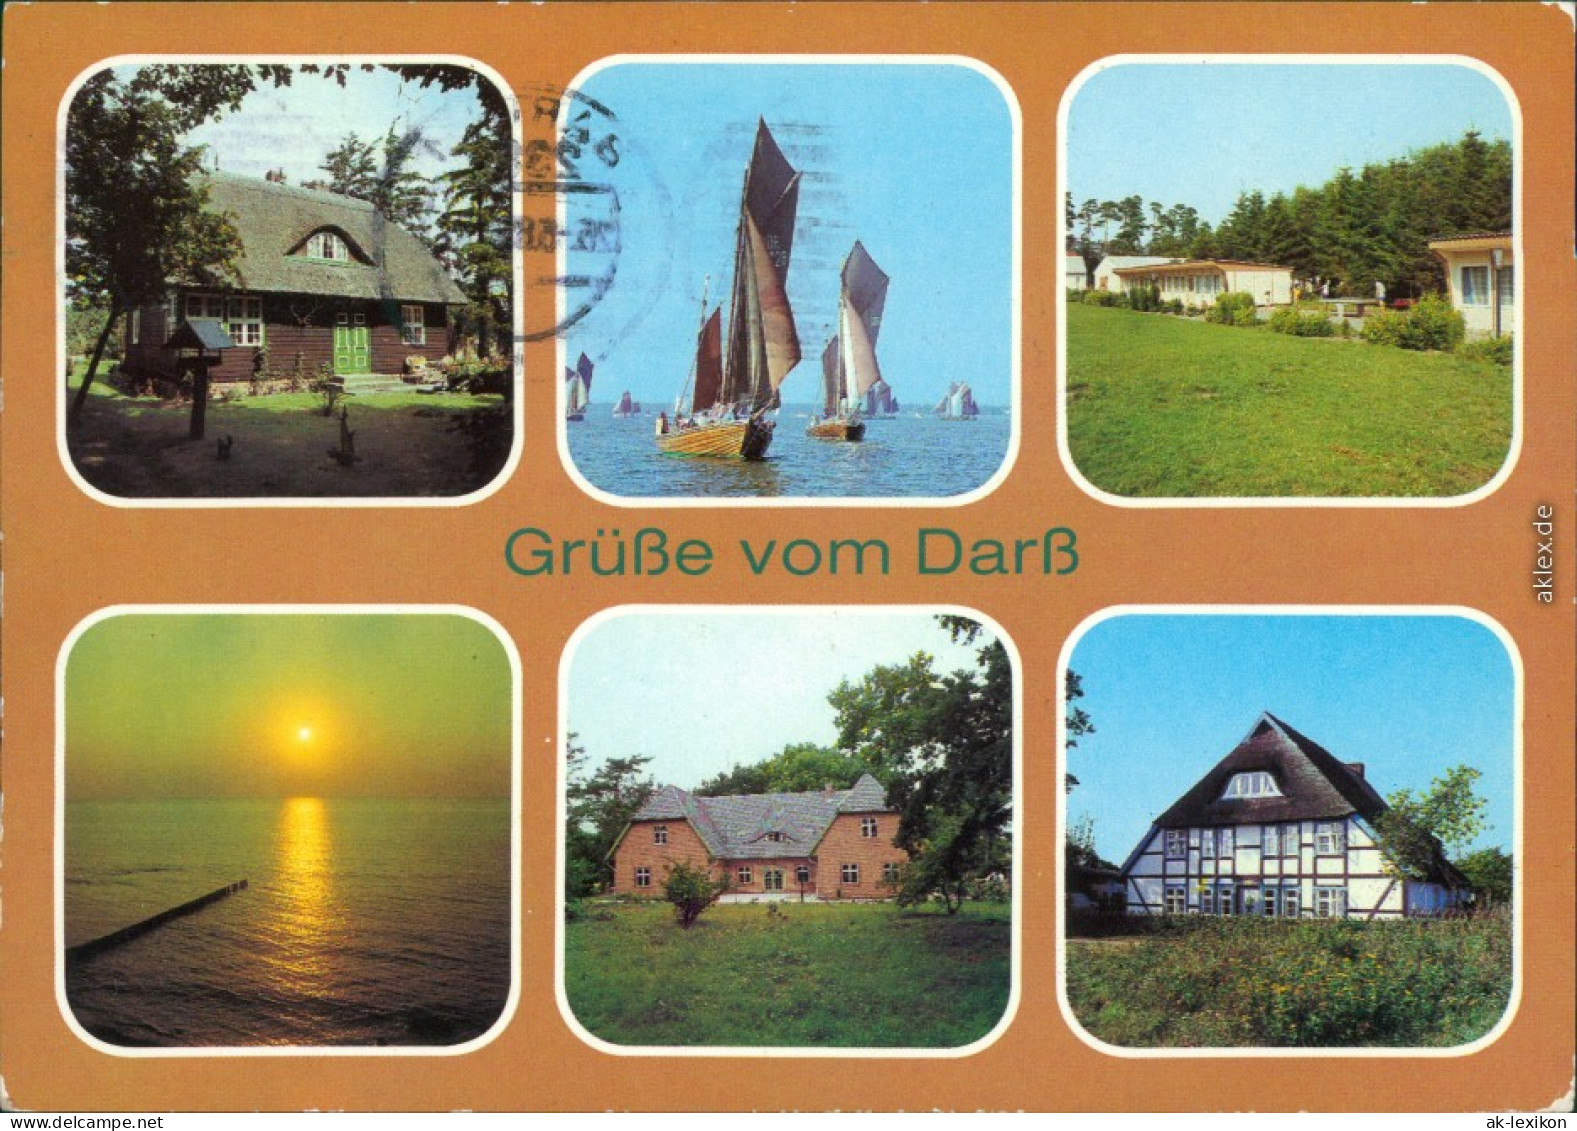 Wieck A. D. Darß Prerow - Forsthaus   Museum, Zeesenbootregatta   1985 - Seebad Prerow